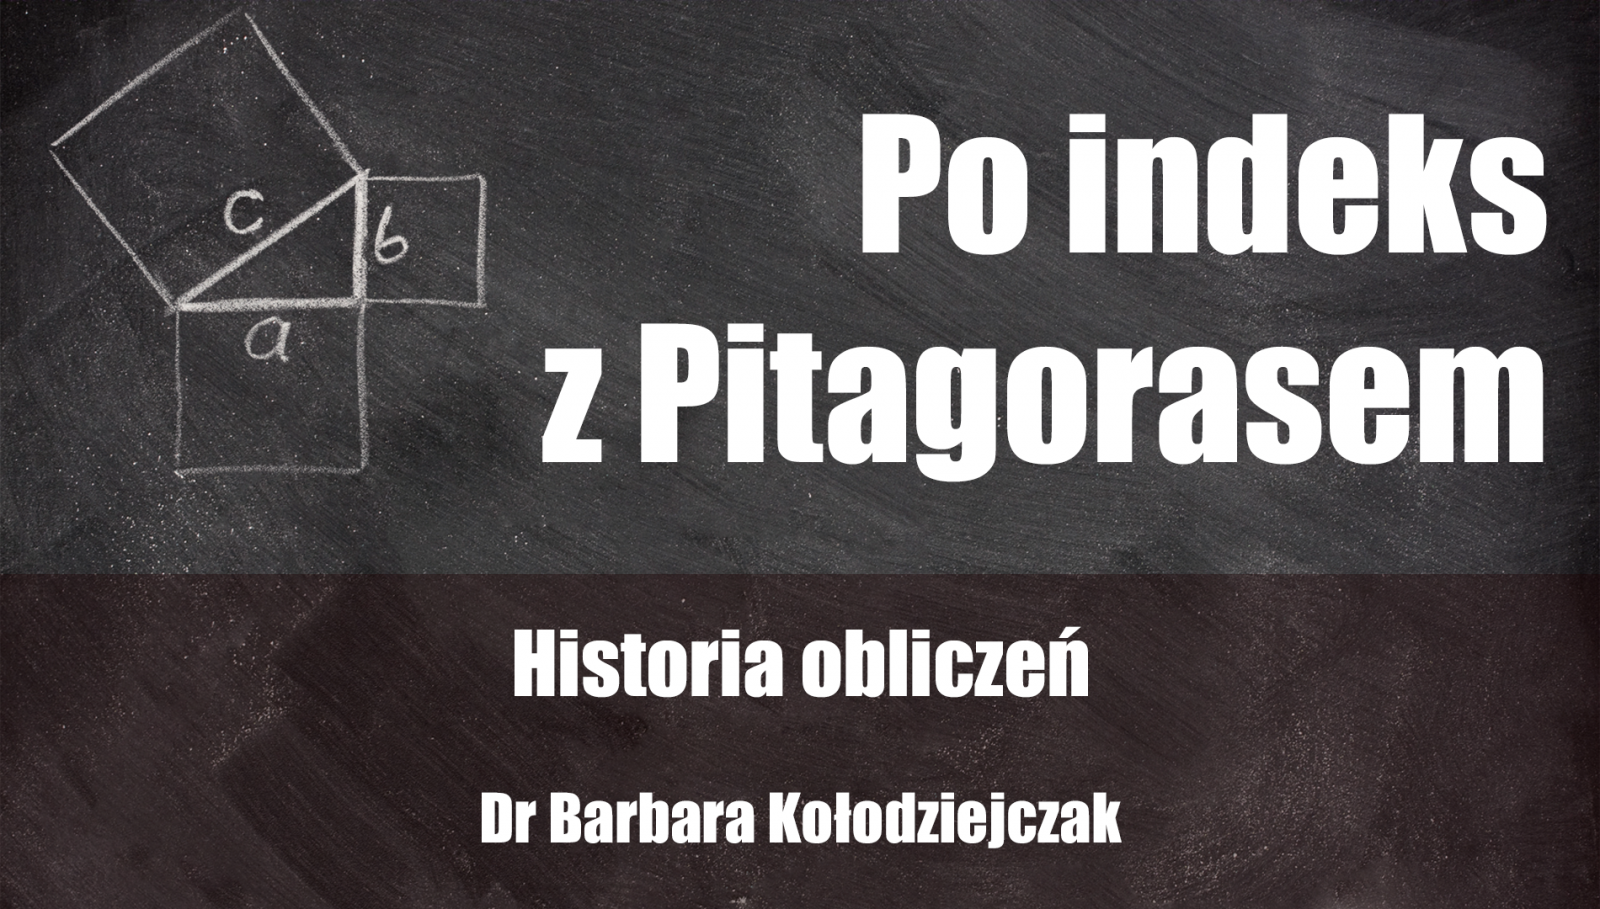 Po indeks z Pitagorasem - dr Barbara Kołodziejczak 